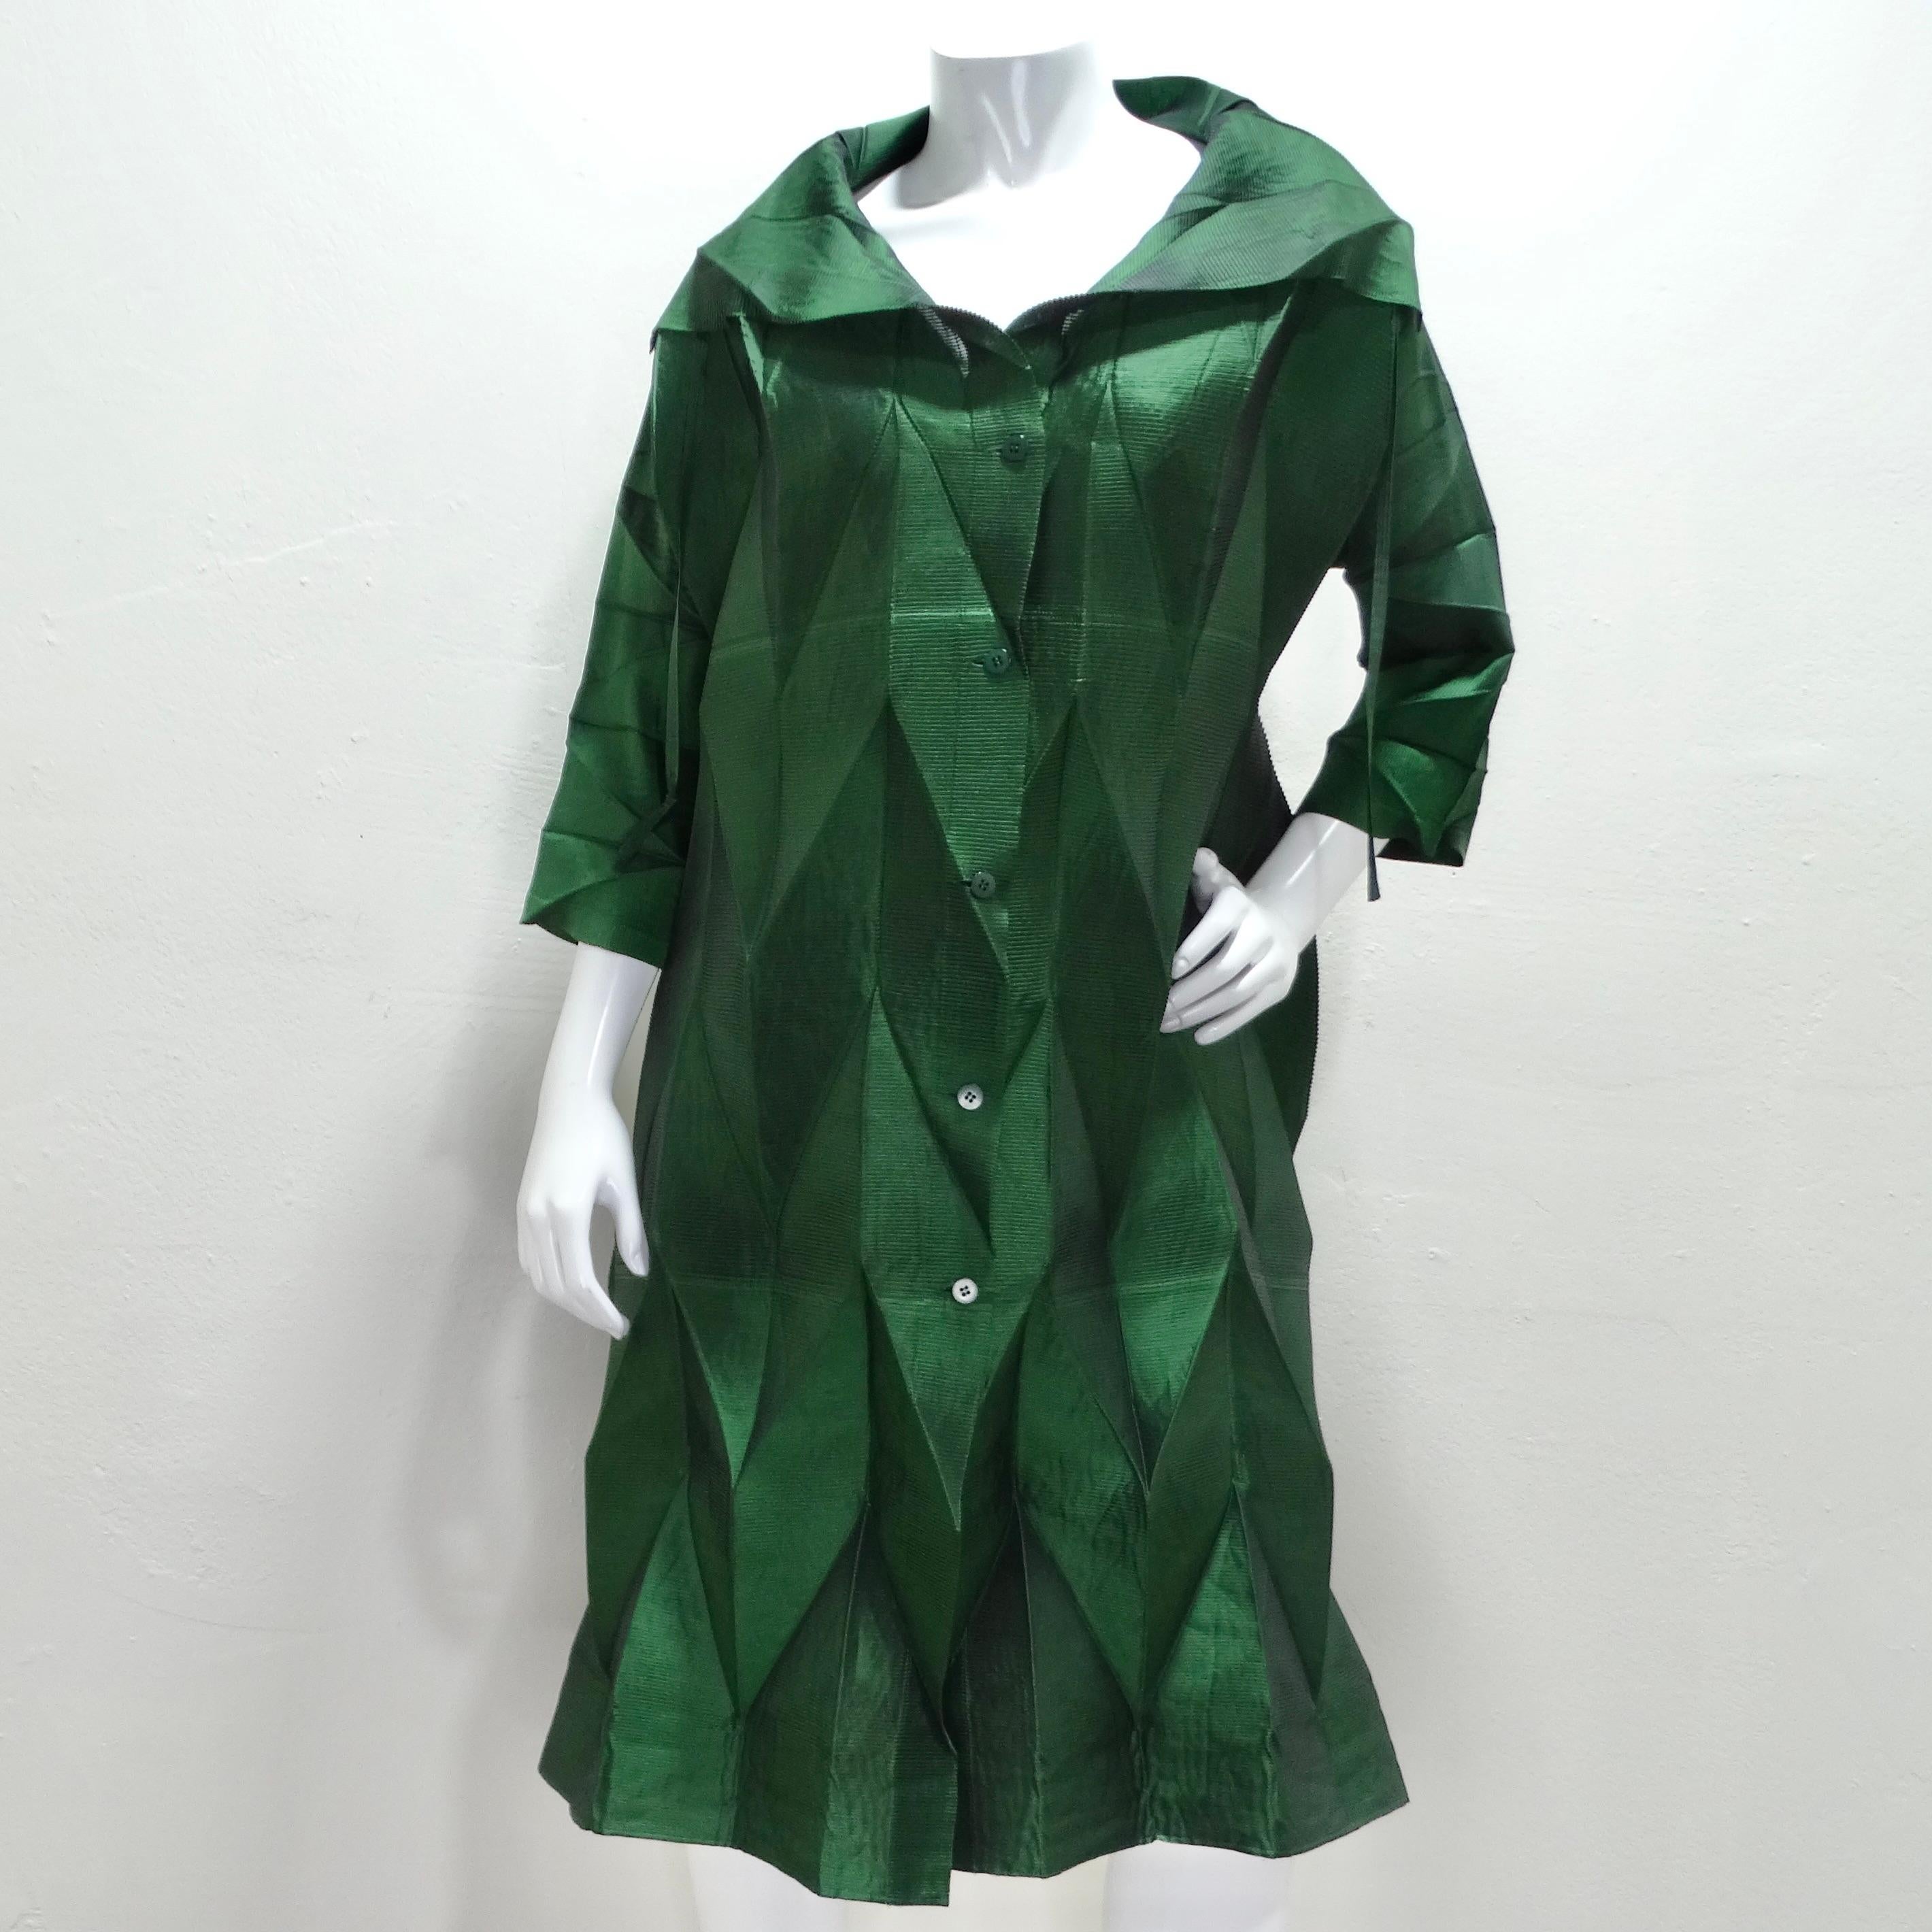 Das grüne Plisseekleid von Issey Miyake für den Laufsteg im Frühjahr 2008 ist ein auffälliges und innovatives Stück, das die Expertise des Designers in Sachen Plissee und Textilmanipulation verkörpert. Die smaragdgrüne Farbe verleiht diesem Kleid